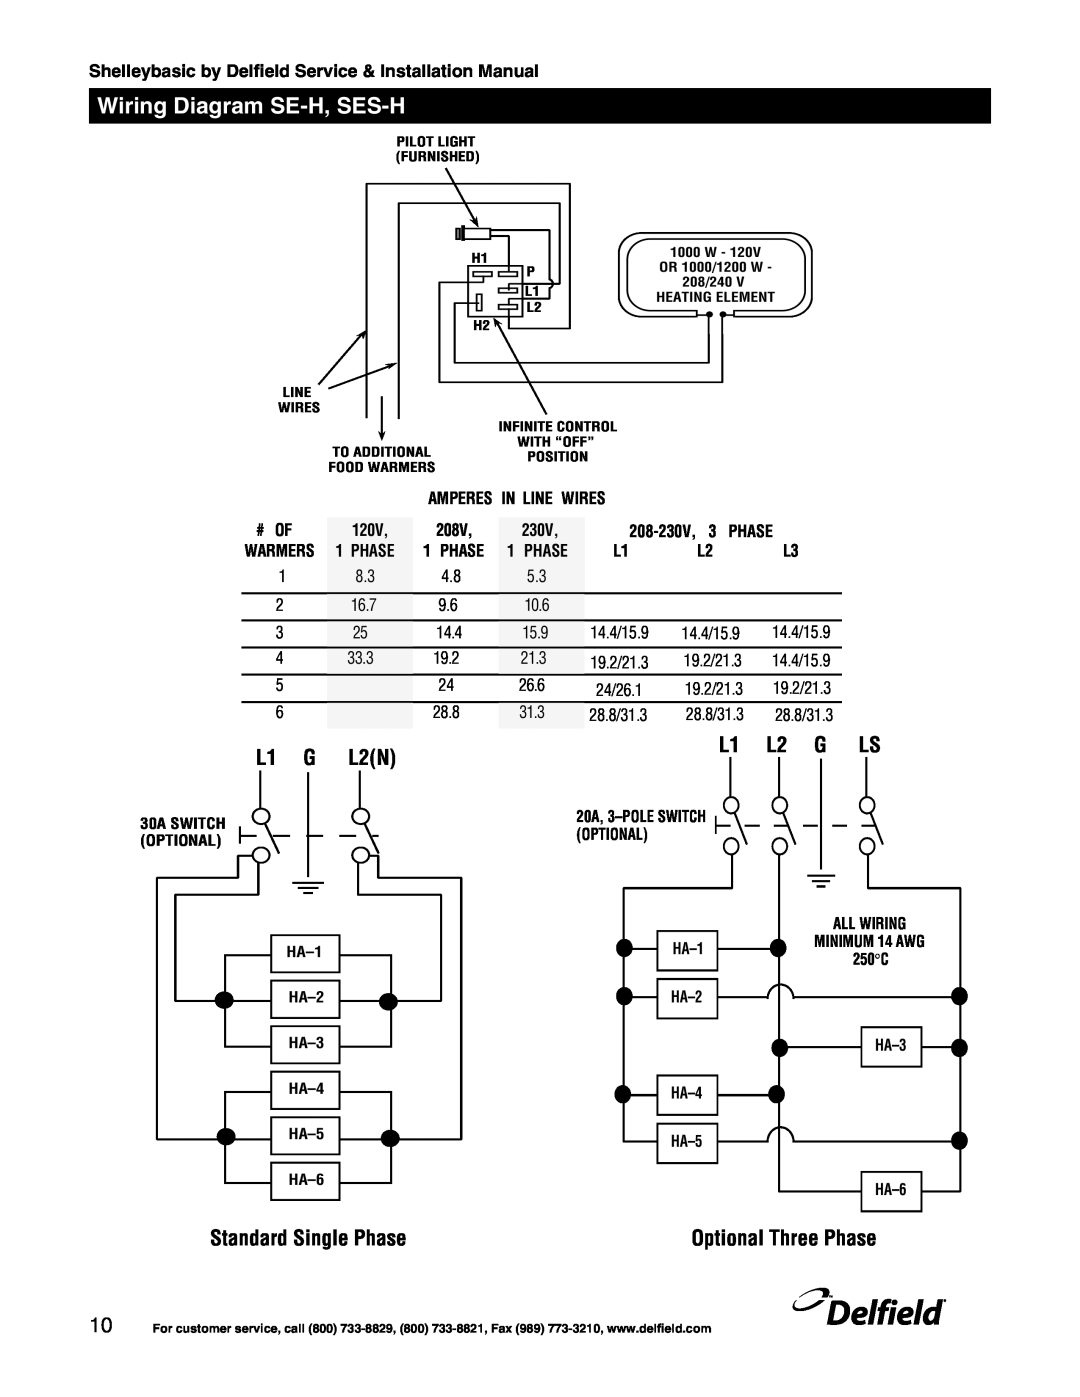 Delfield Shelleybasic manual Wiring Diagram SE-H, SES-H, Amperes In Line Wires, 120V, 208V, 208-230V, 3 PHASE, Phase 